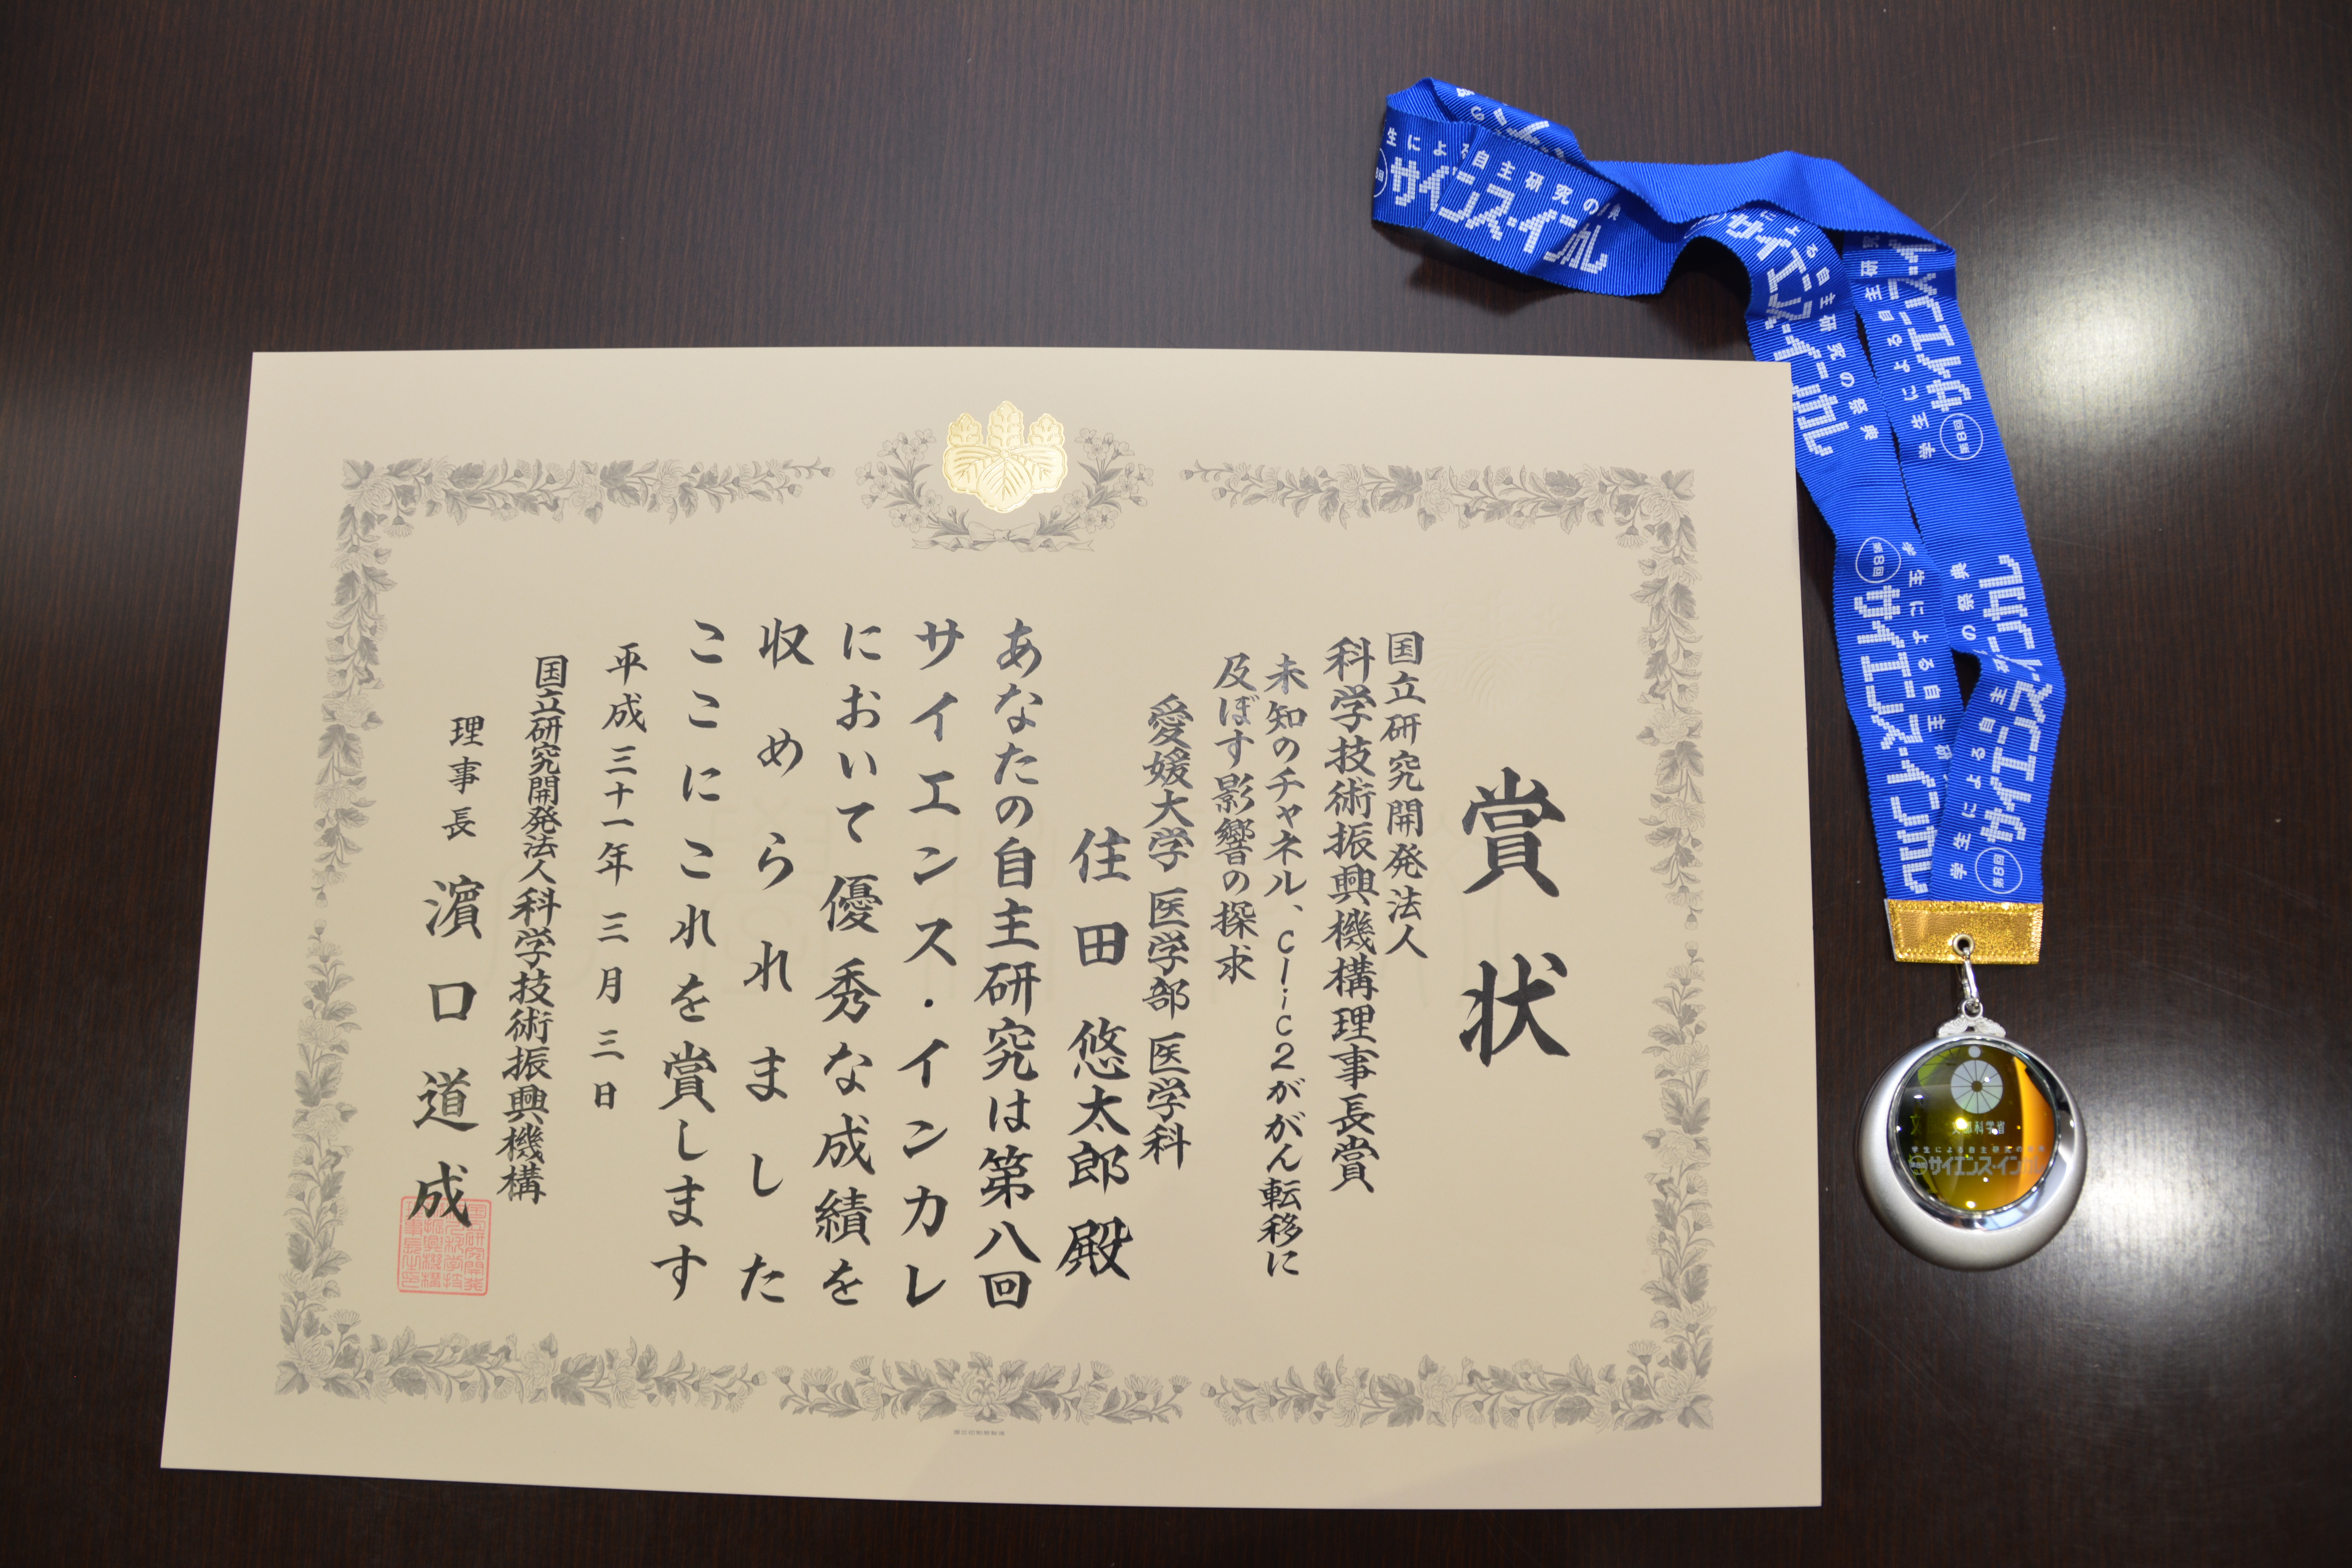 住田さんが受賞した理事長賞の賞状とメダル